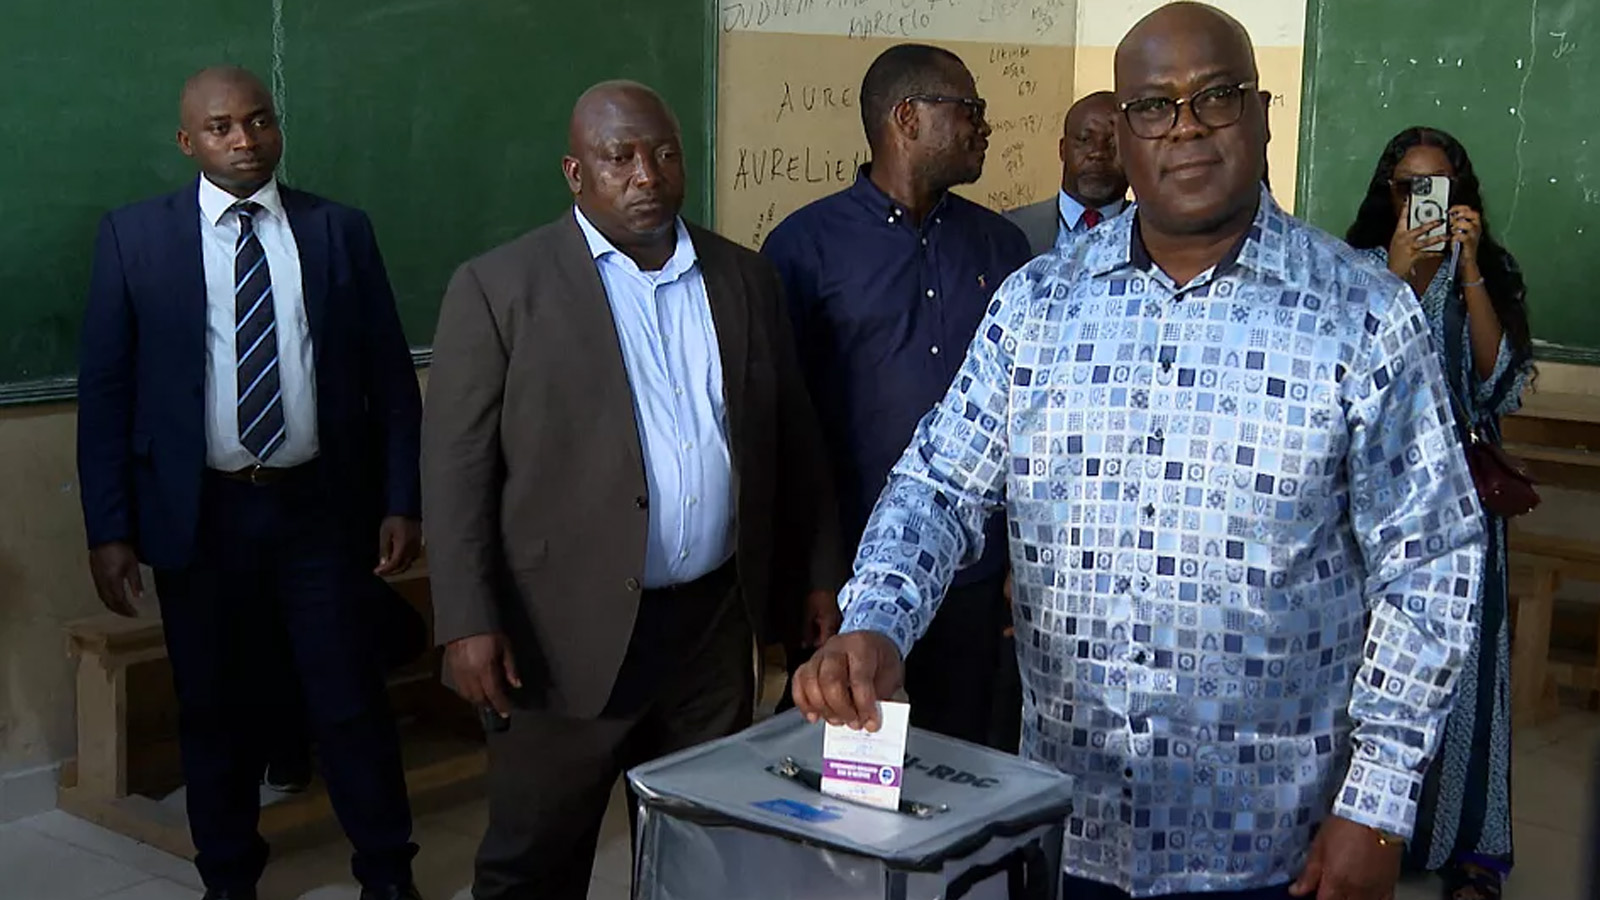 الرئيس الحالي لجمهورية الكونغو الديمقراطية فيليكس تشيسيكيدي يدلي بصوته في مركز اقتراع سانت جورج كيتامبو في كينشاسا